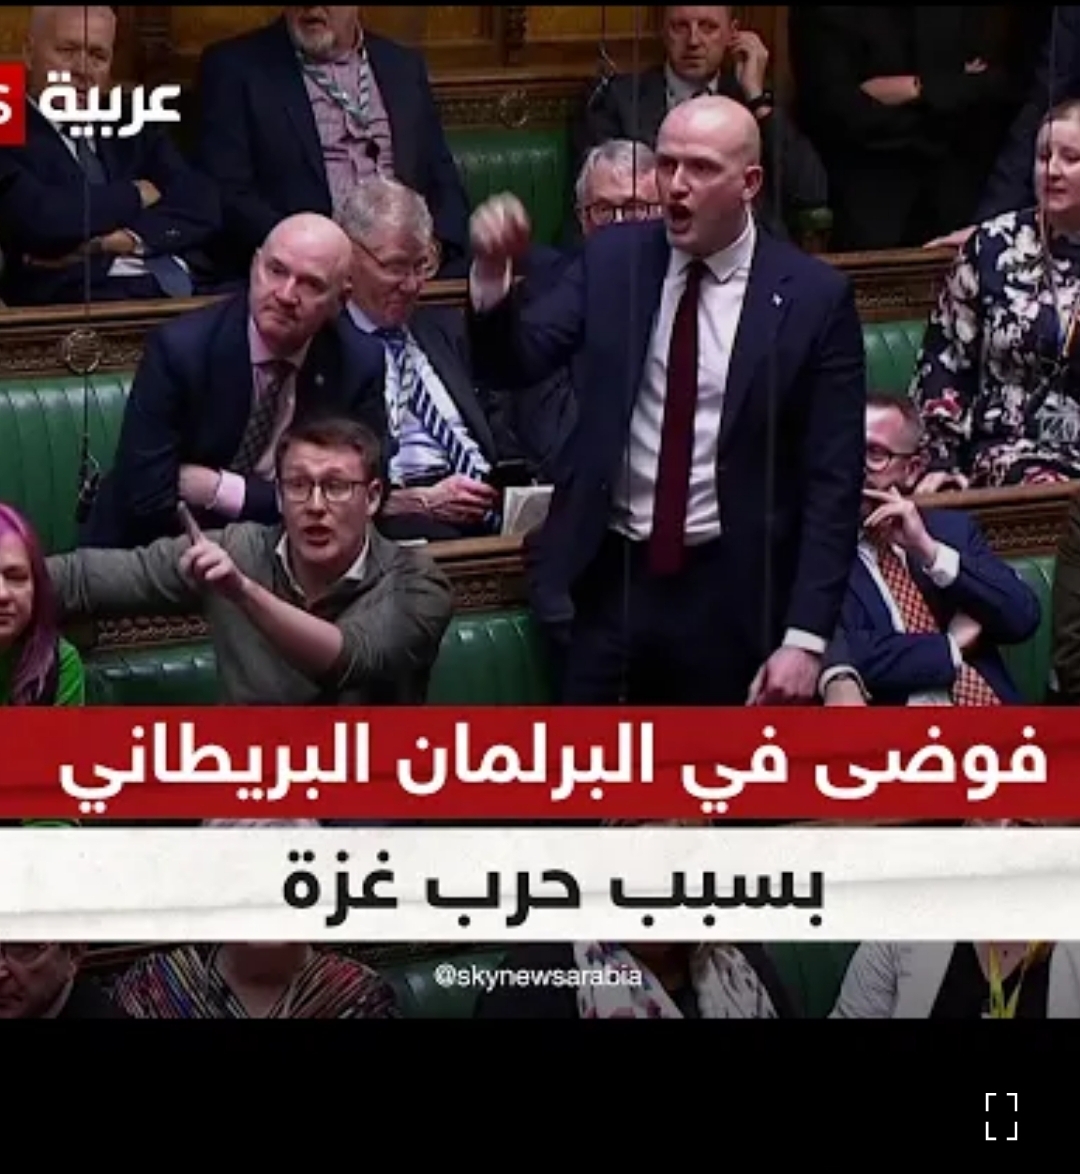 شاهد.. فوضى عارمة وتراشق للتهم في البرلمان البريطاني بسبب مقترح حول حرب غزة